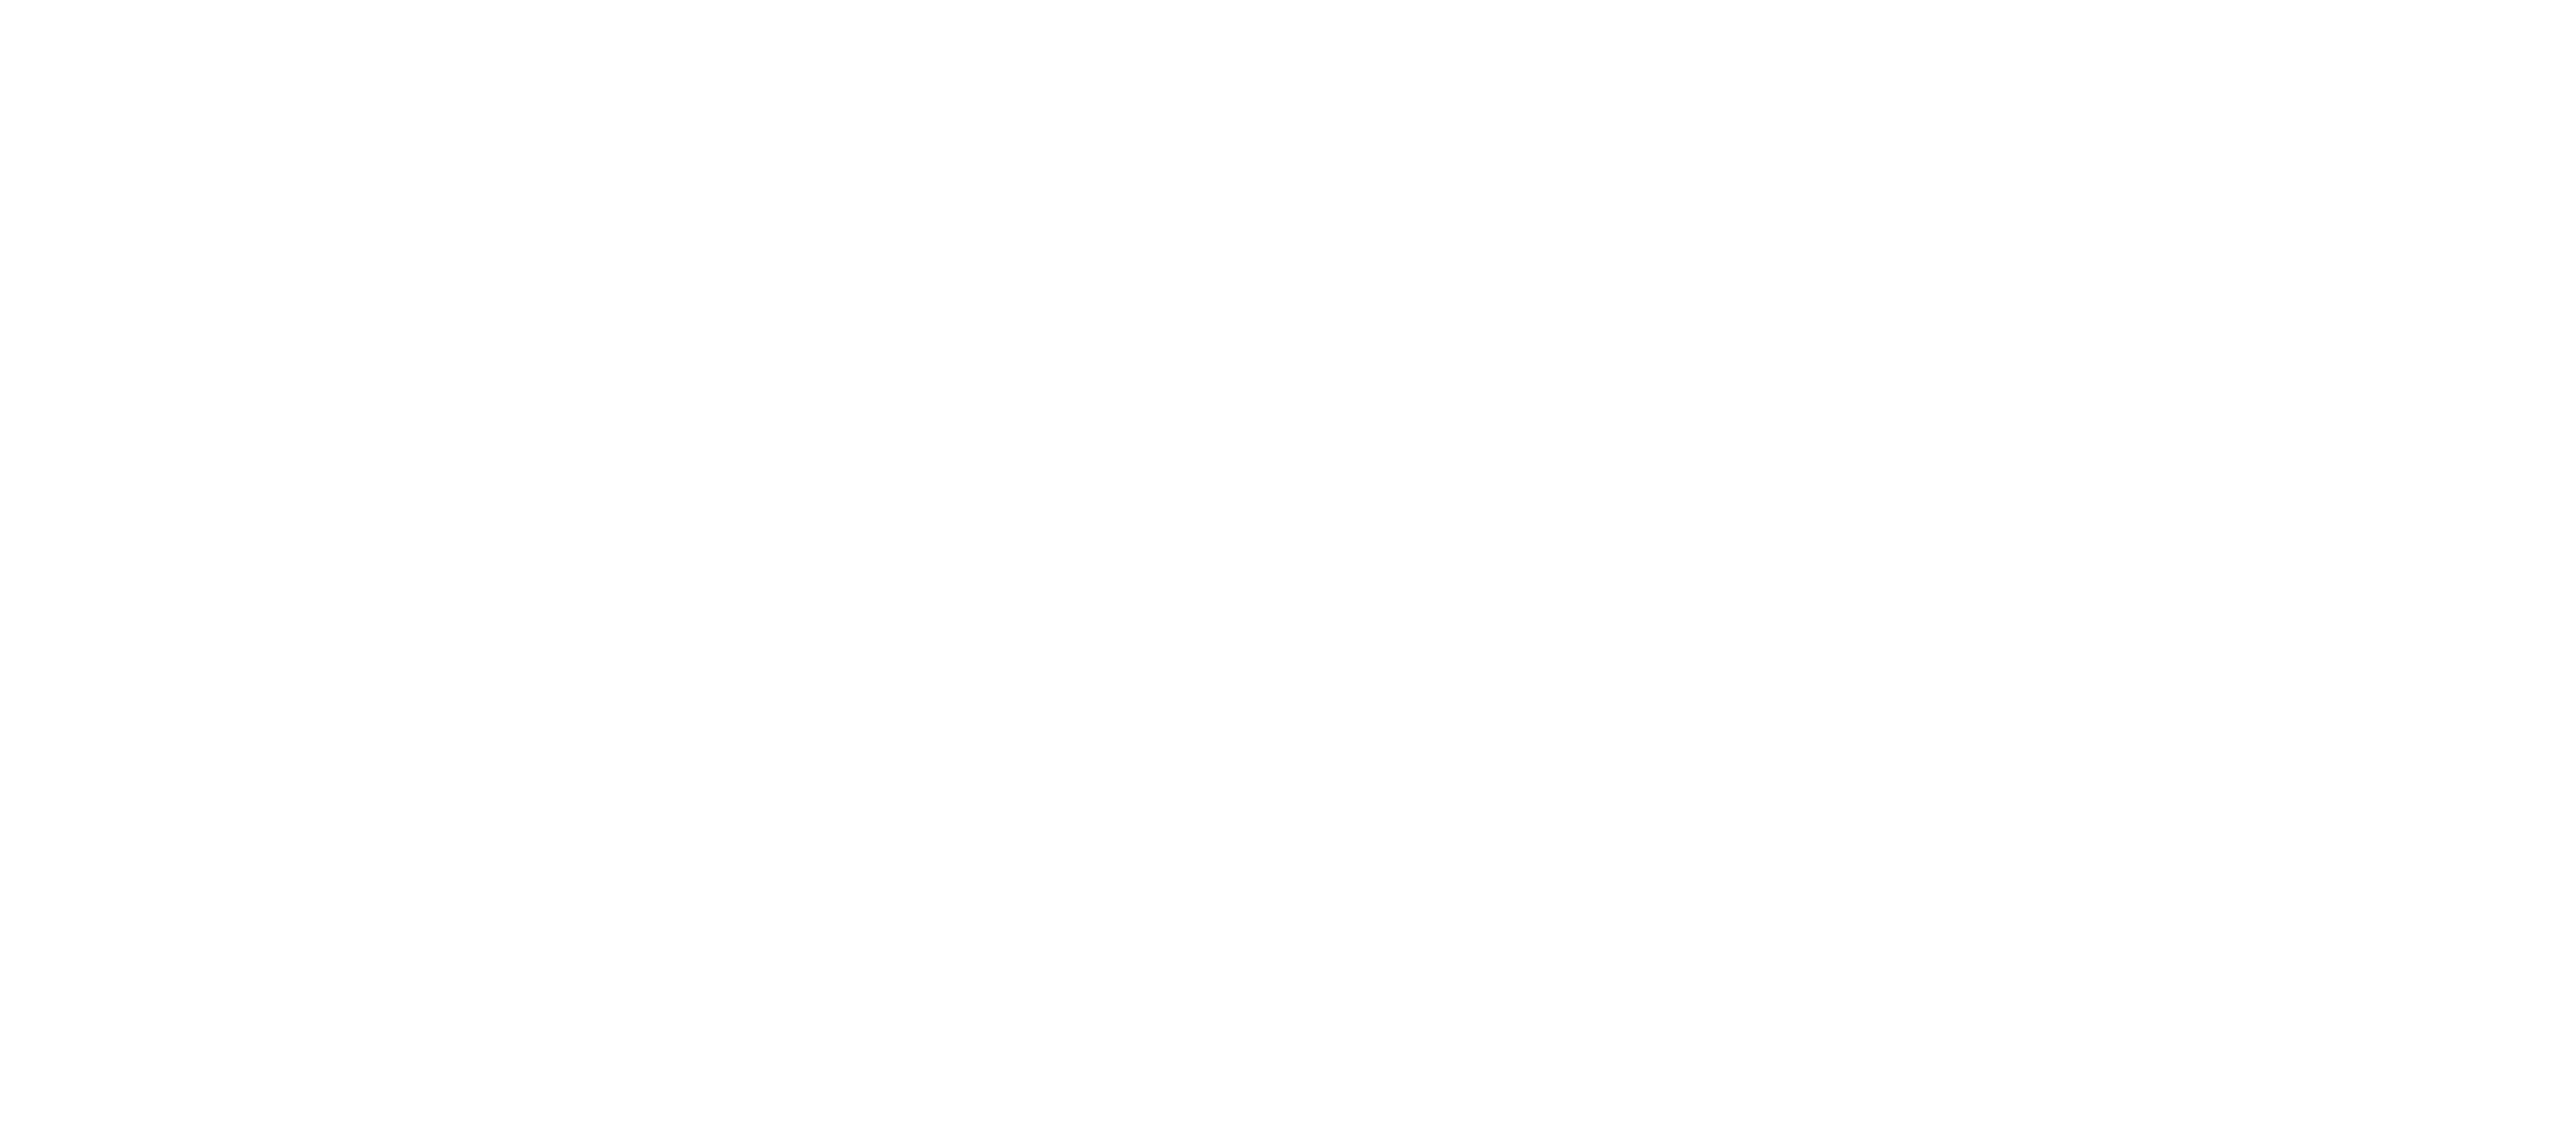 Southern Animal Volunteer Effort